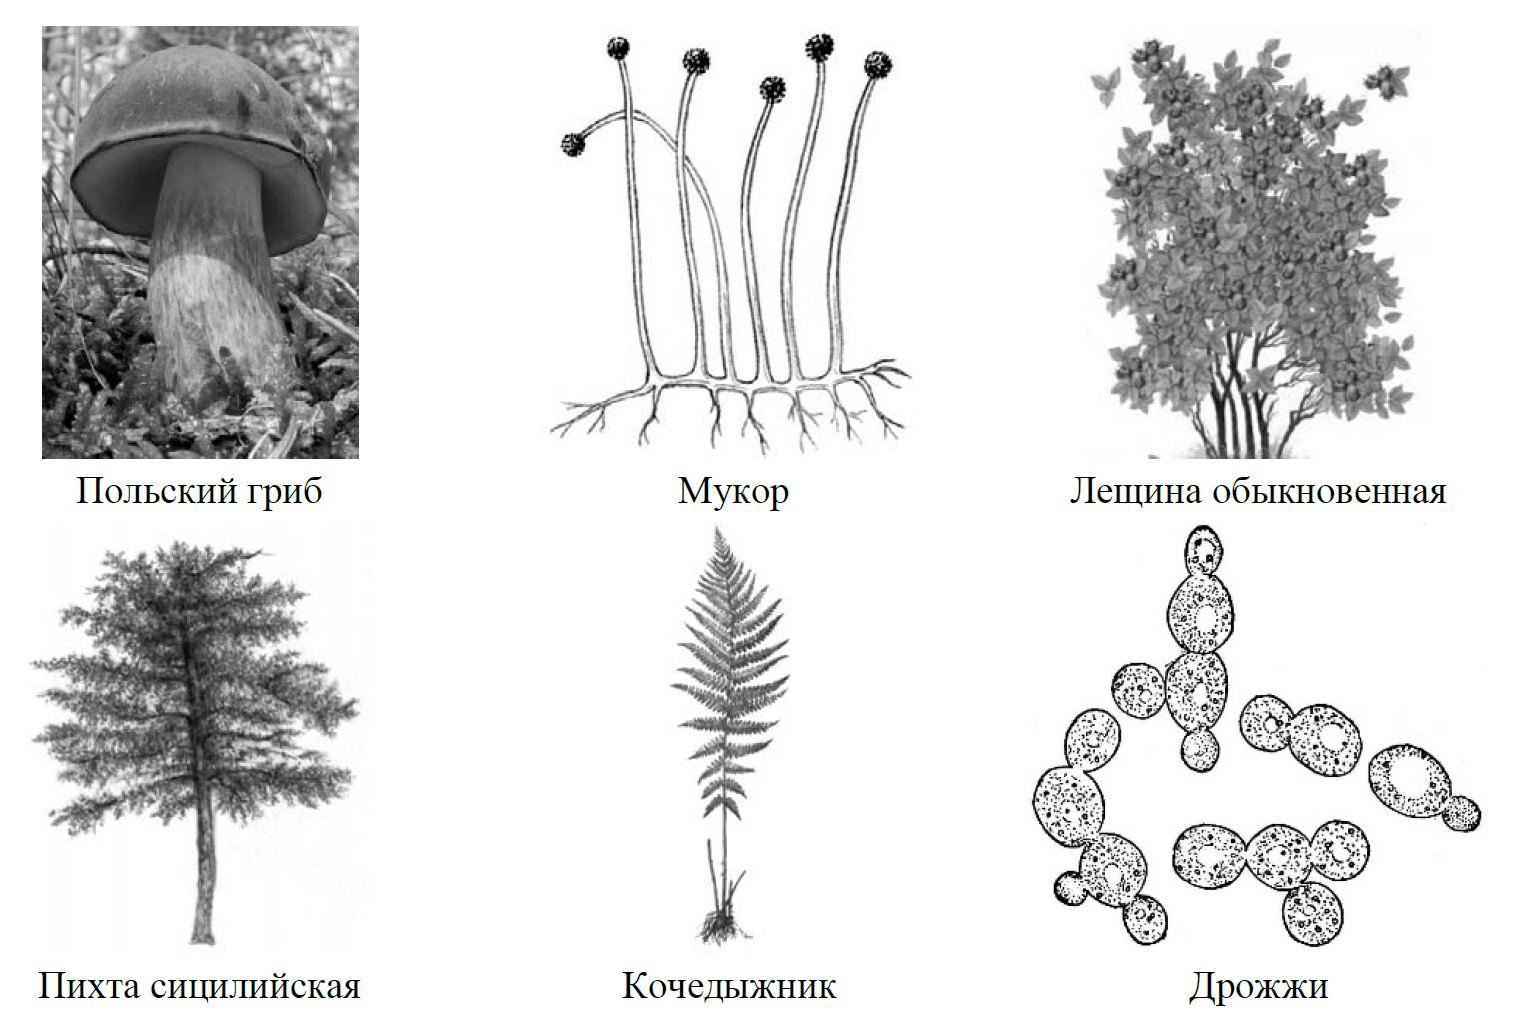 Спороношение это. Рассмотрите изображение шести организмов. ВПР по биологии рисунок дерево схема с заданием. ВПР по биологии 7 класс задание 9. ВПР по биологии рисунок дерево схема с заданием фотосинтез.